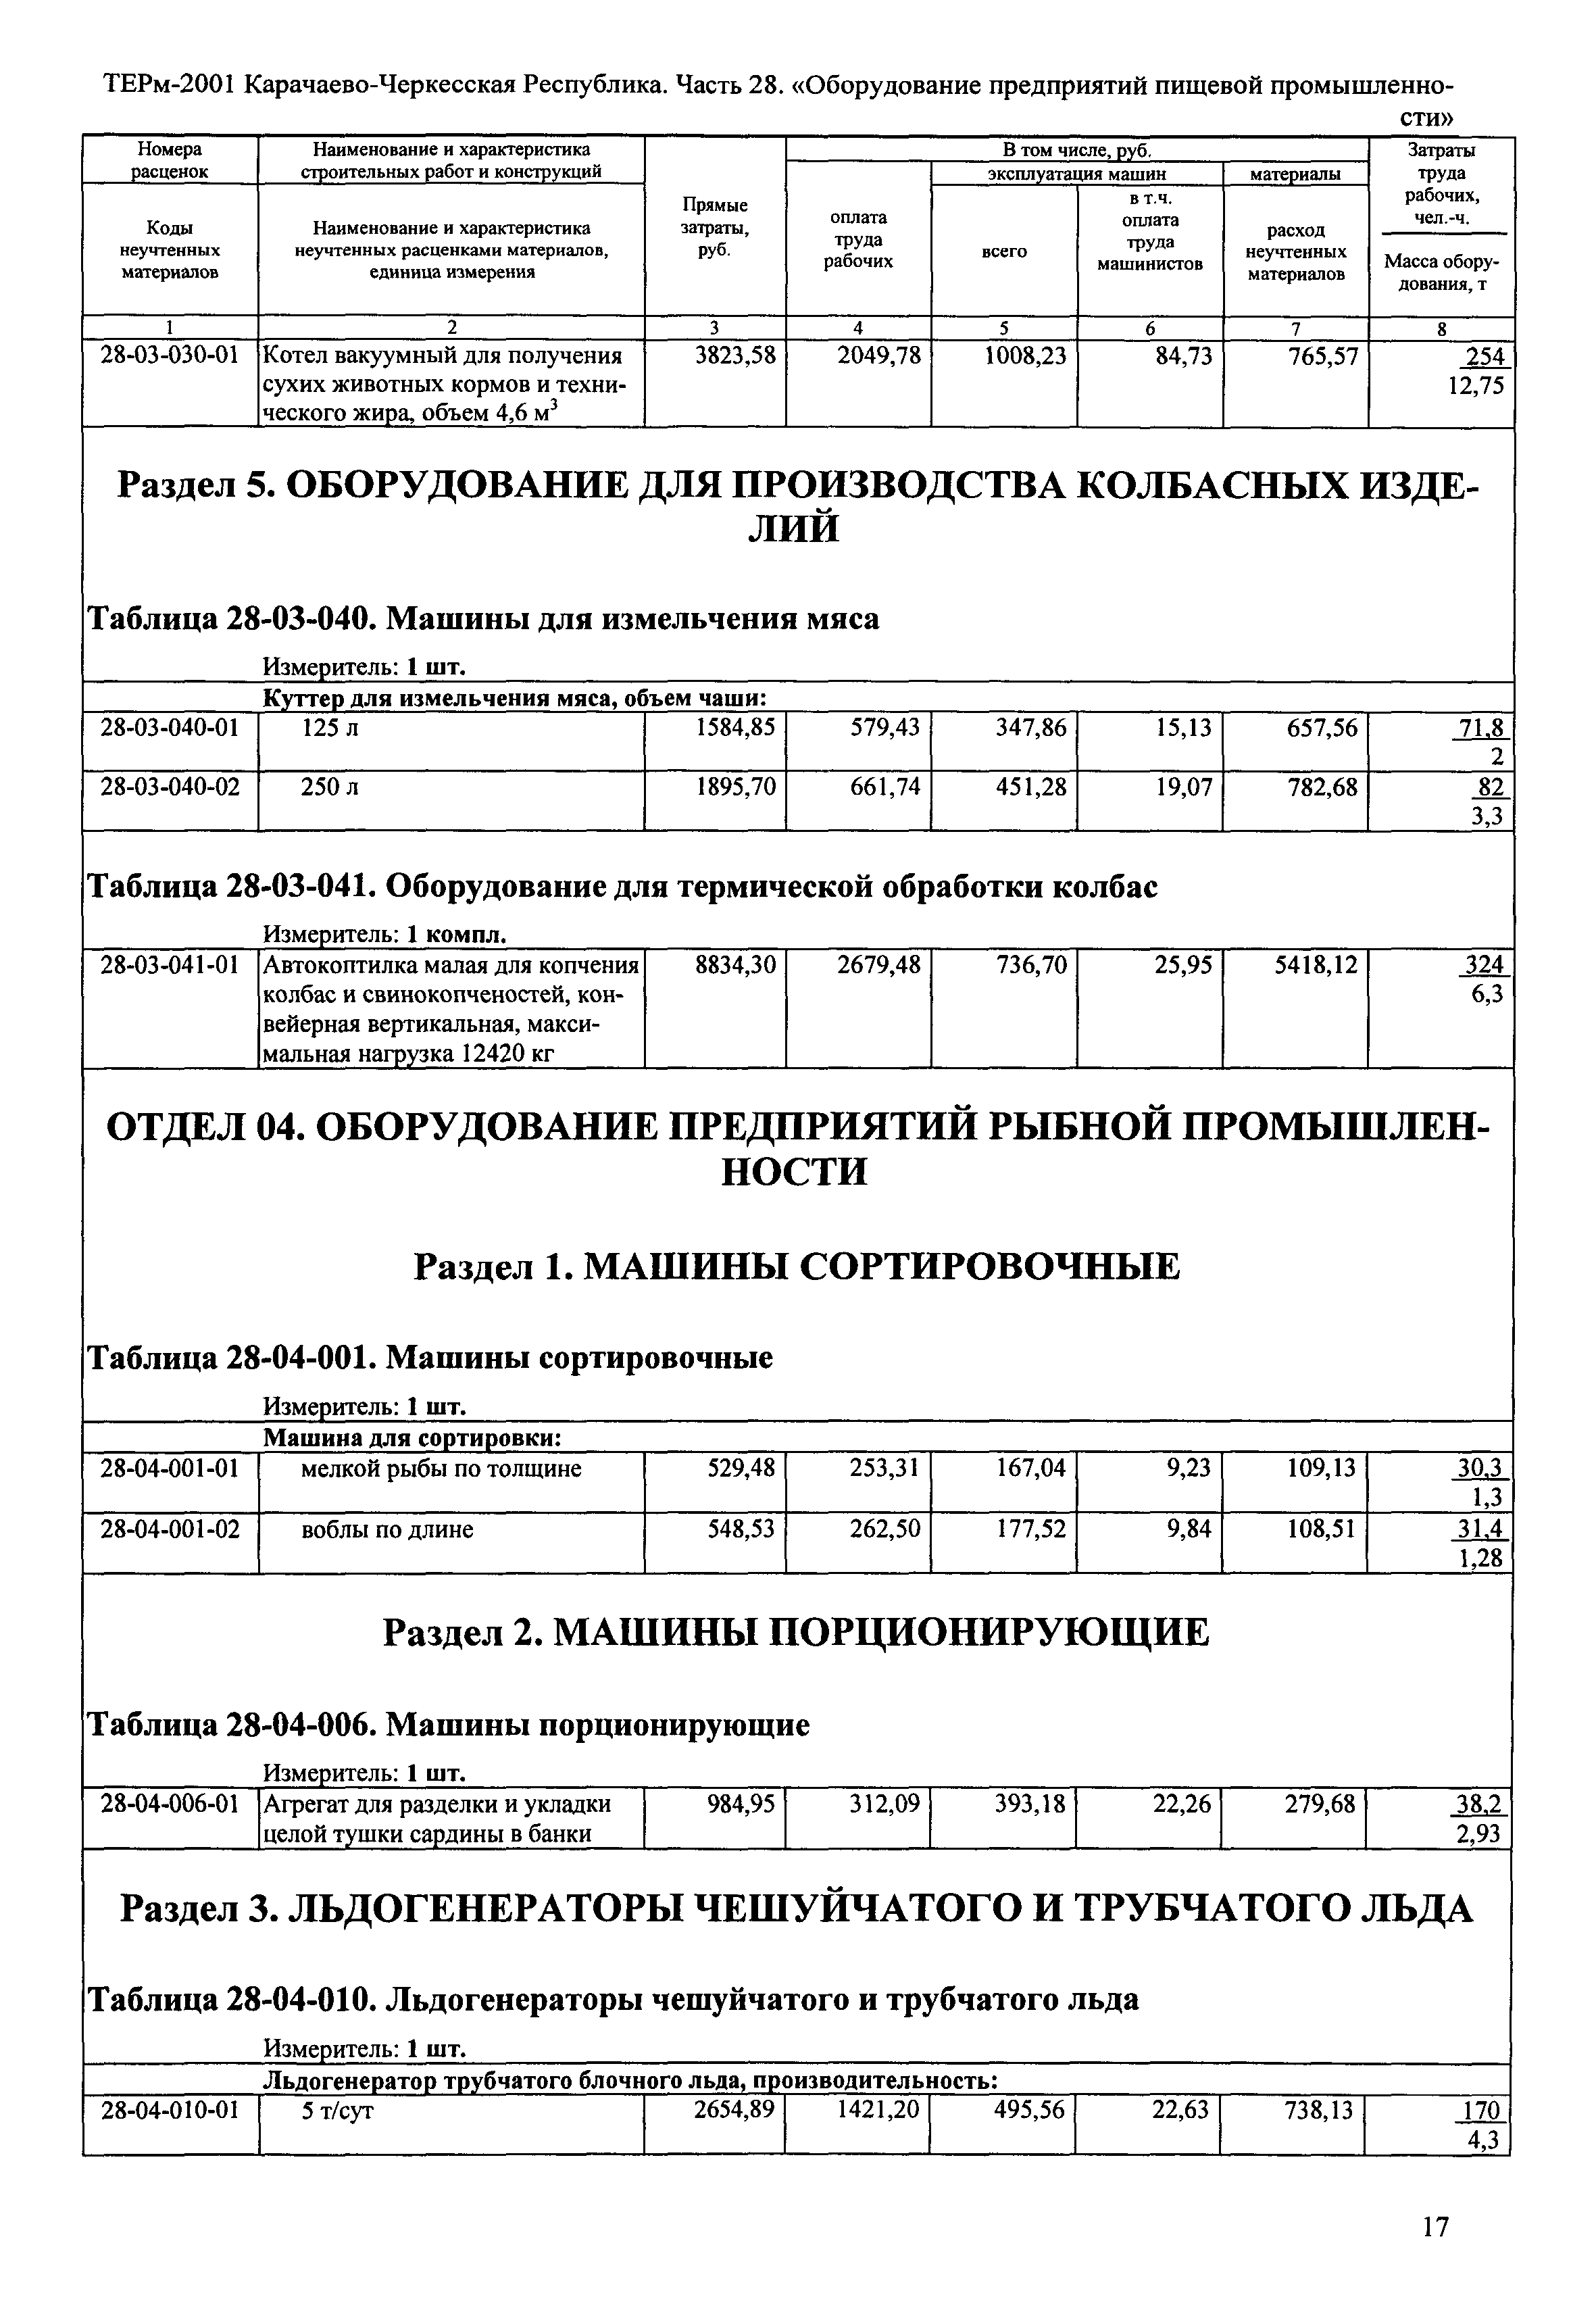 ТЕРм Карачаево-Черкесская Республика 28-2001